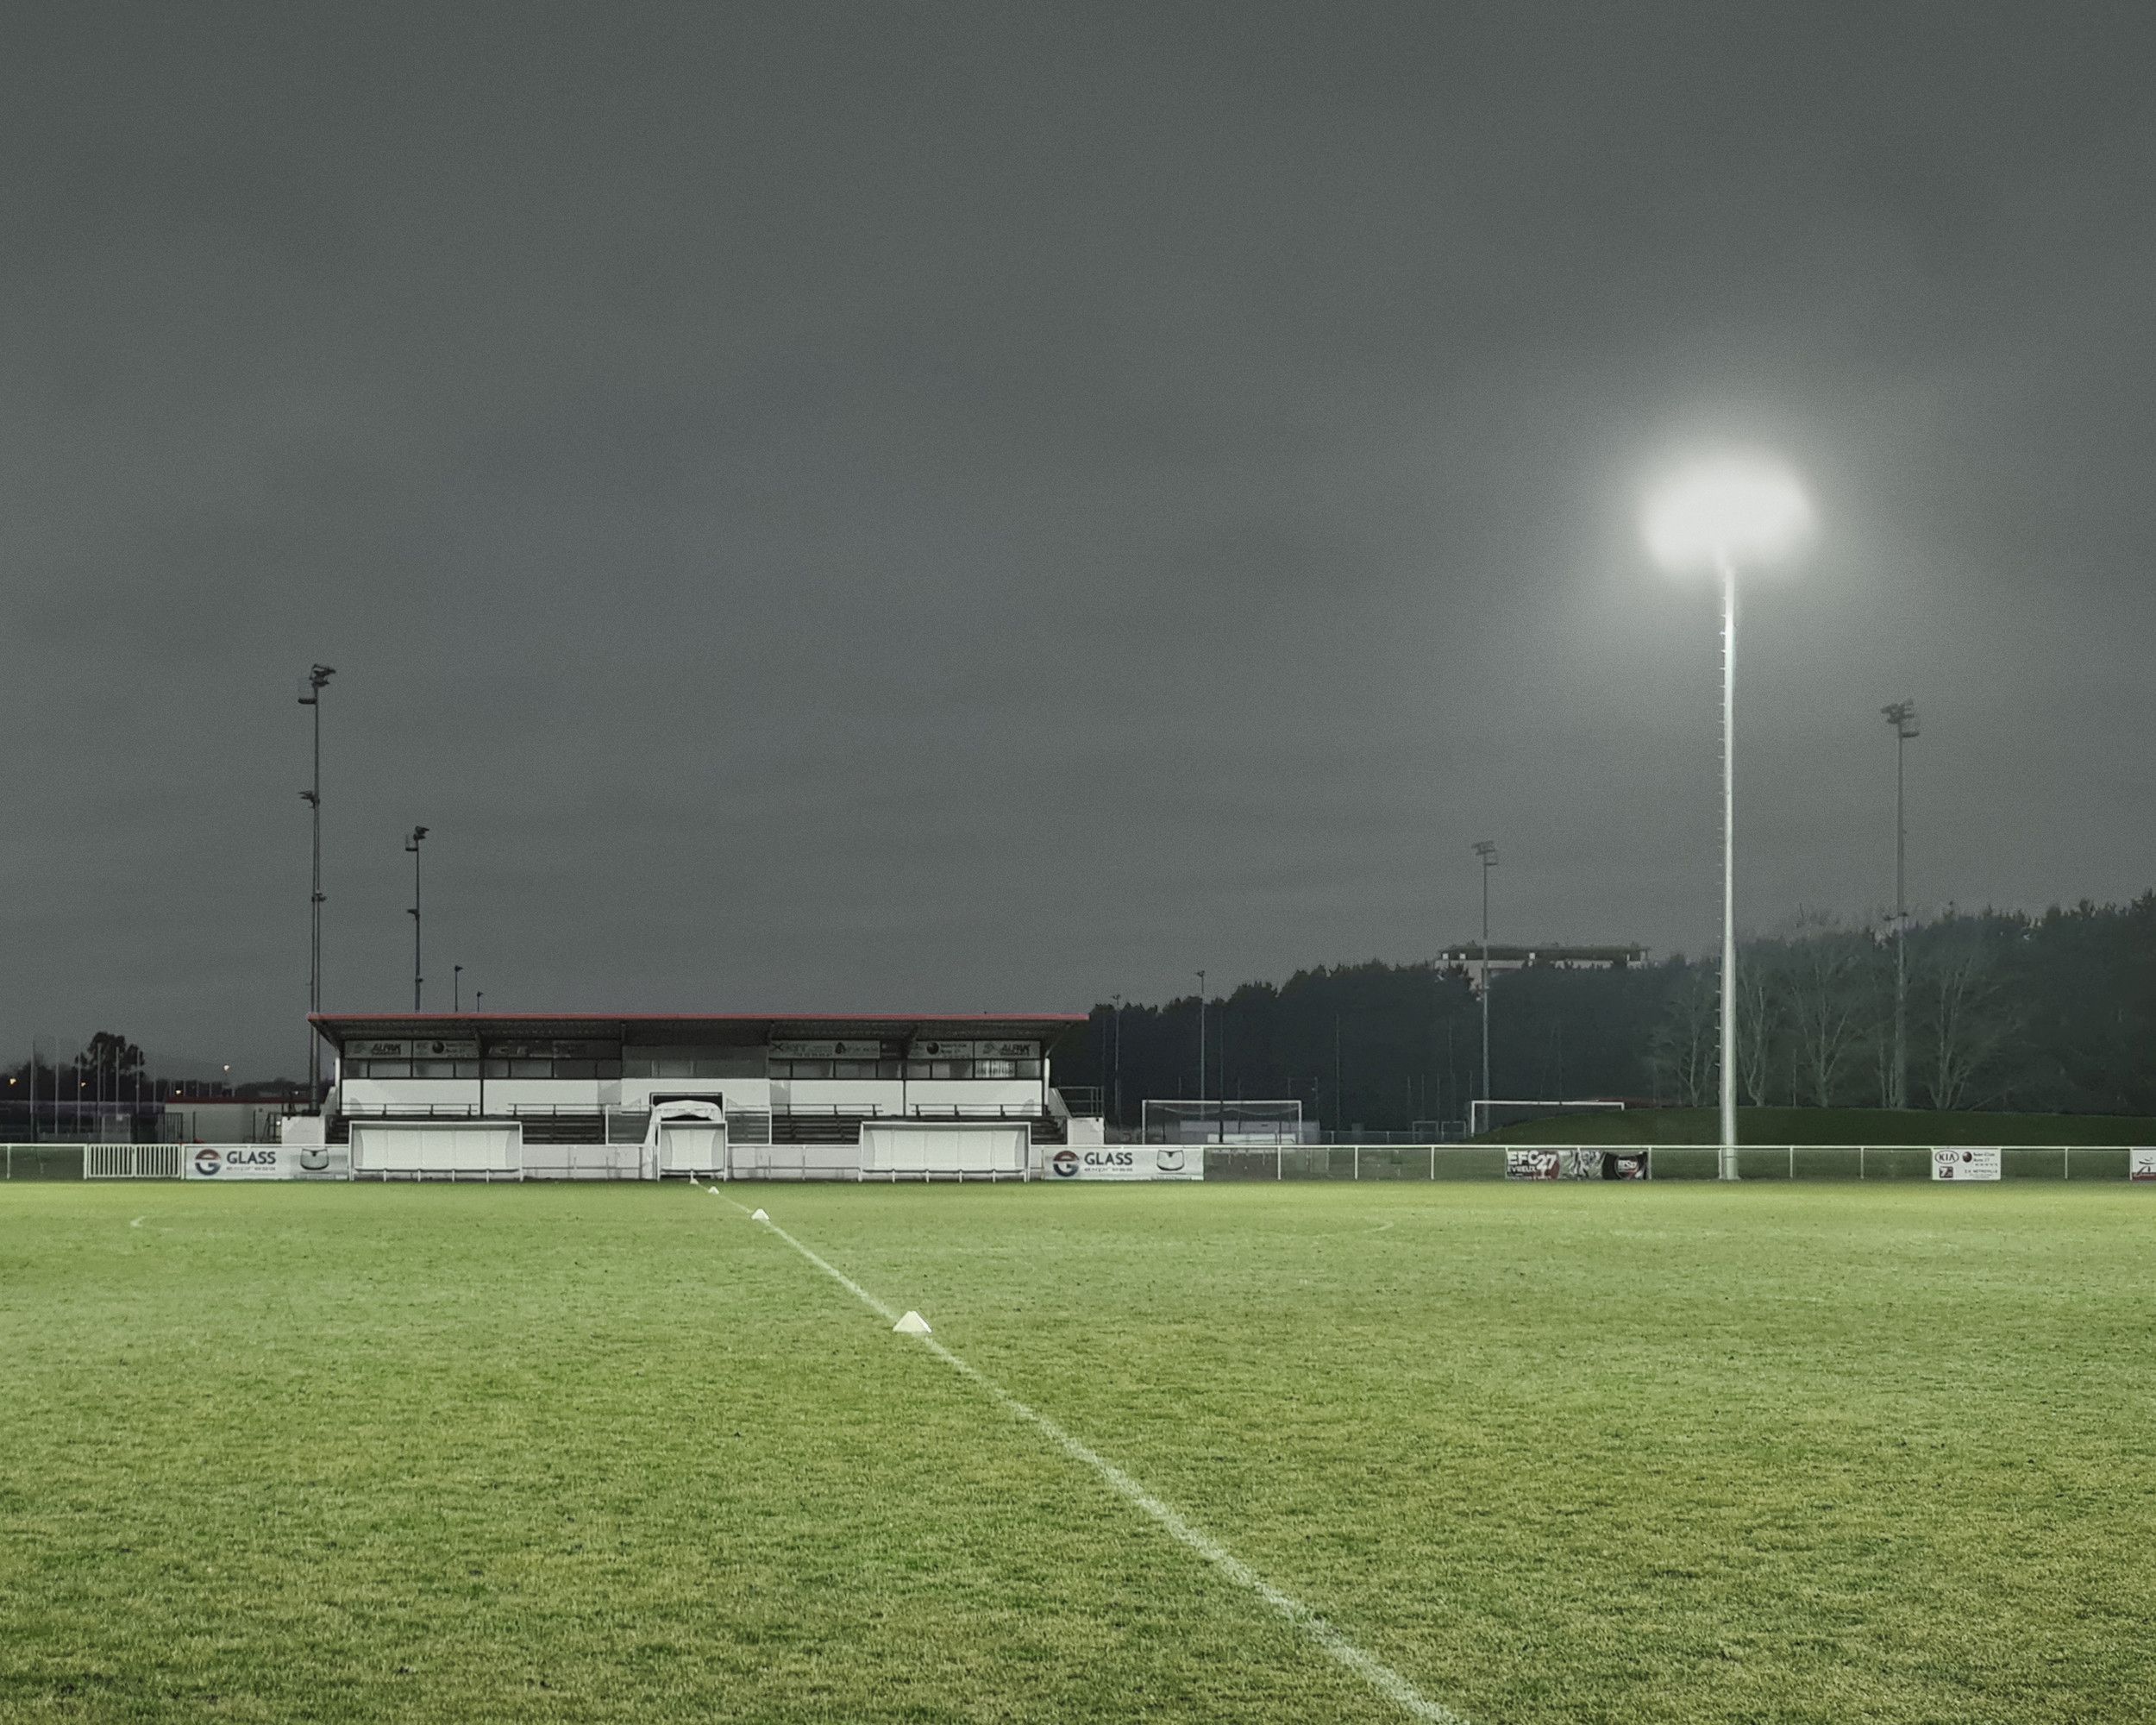 Płyta boiska piłkarskiego o zmierzchu, oświetlona grupą naświetlaczy umieszczonych na wysokim maszcie.